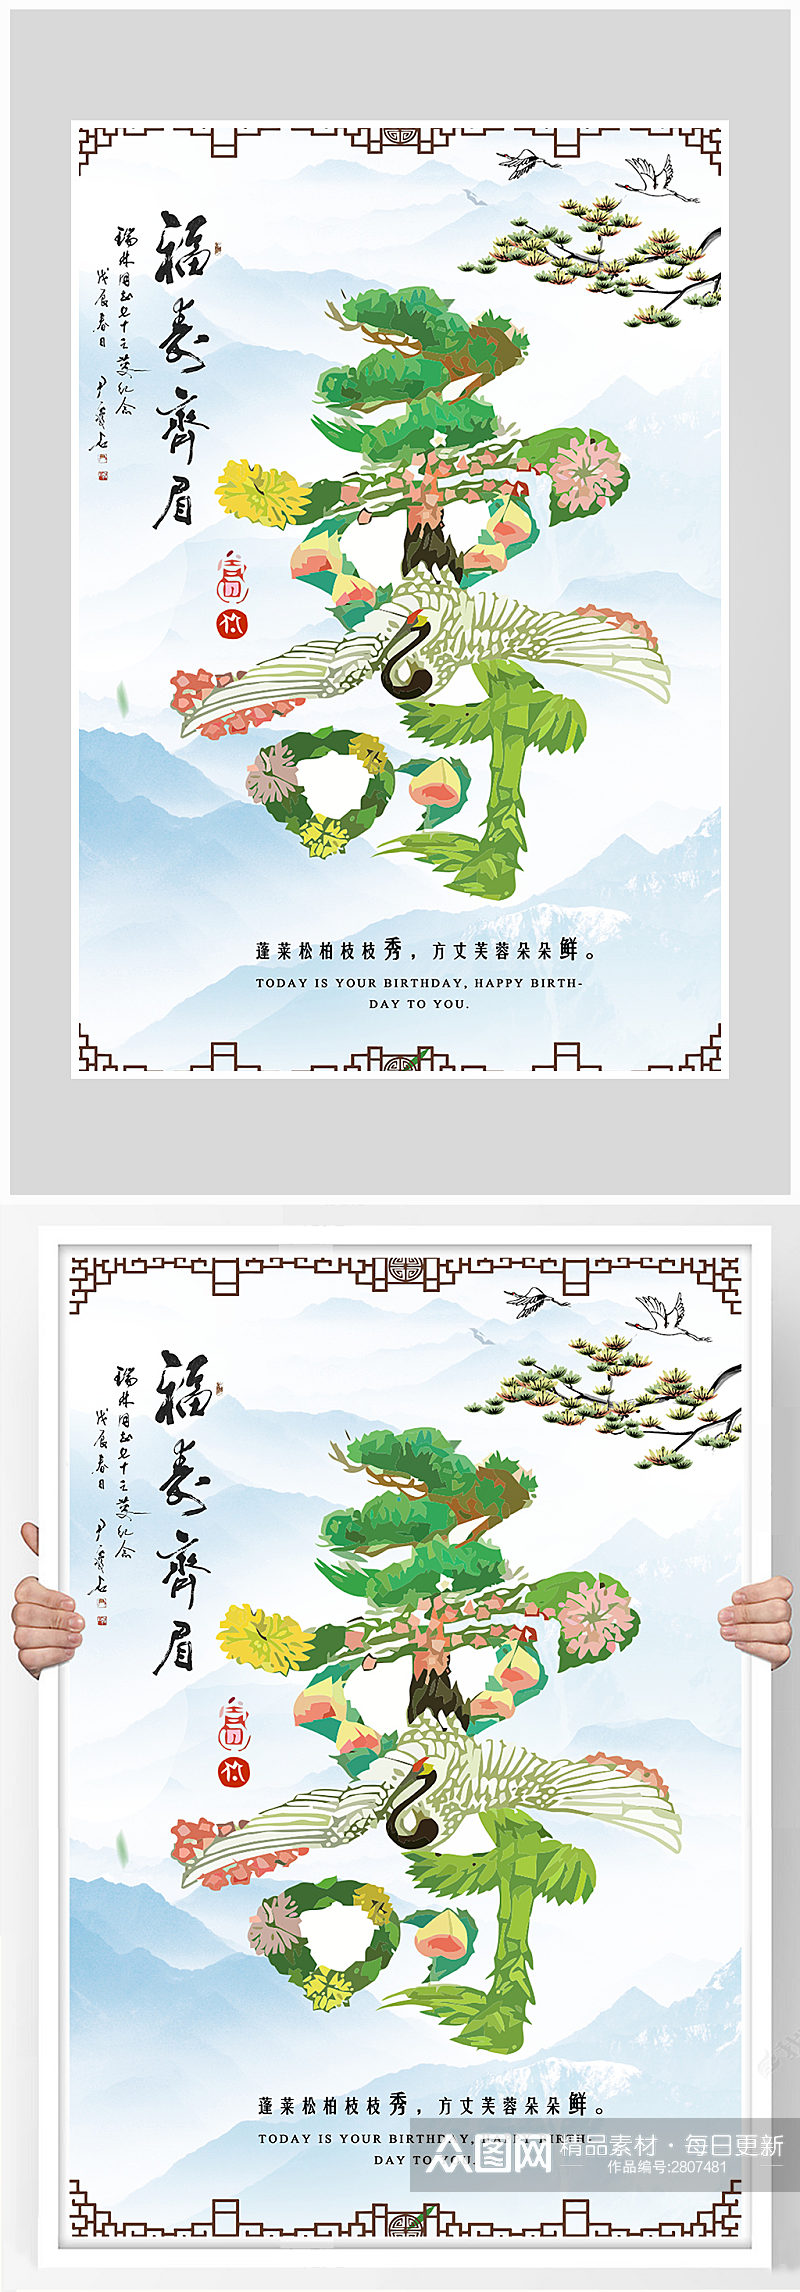 创意中国风祝寿生日海报设计素材